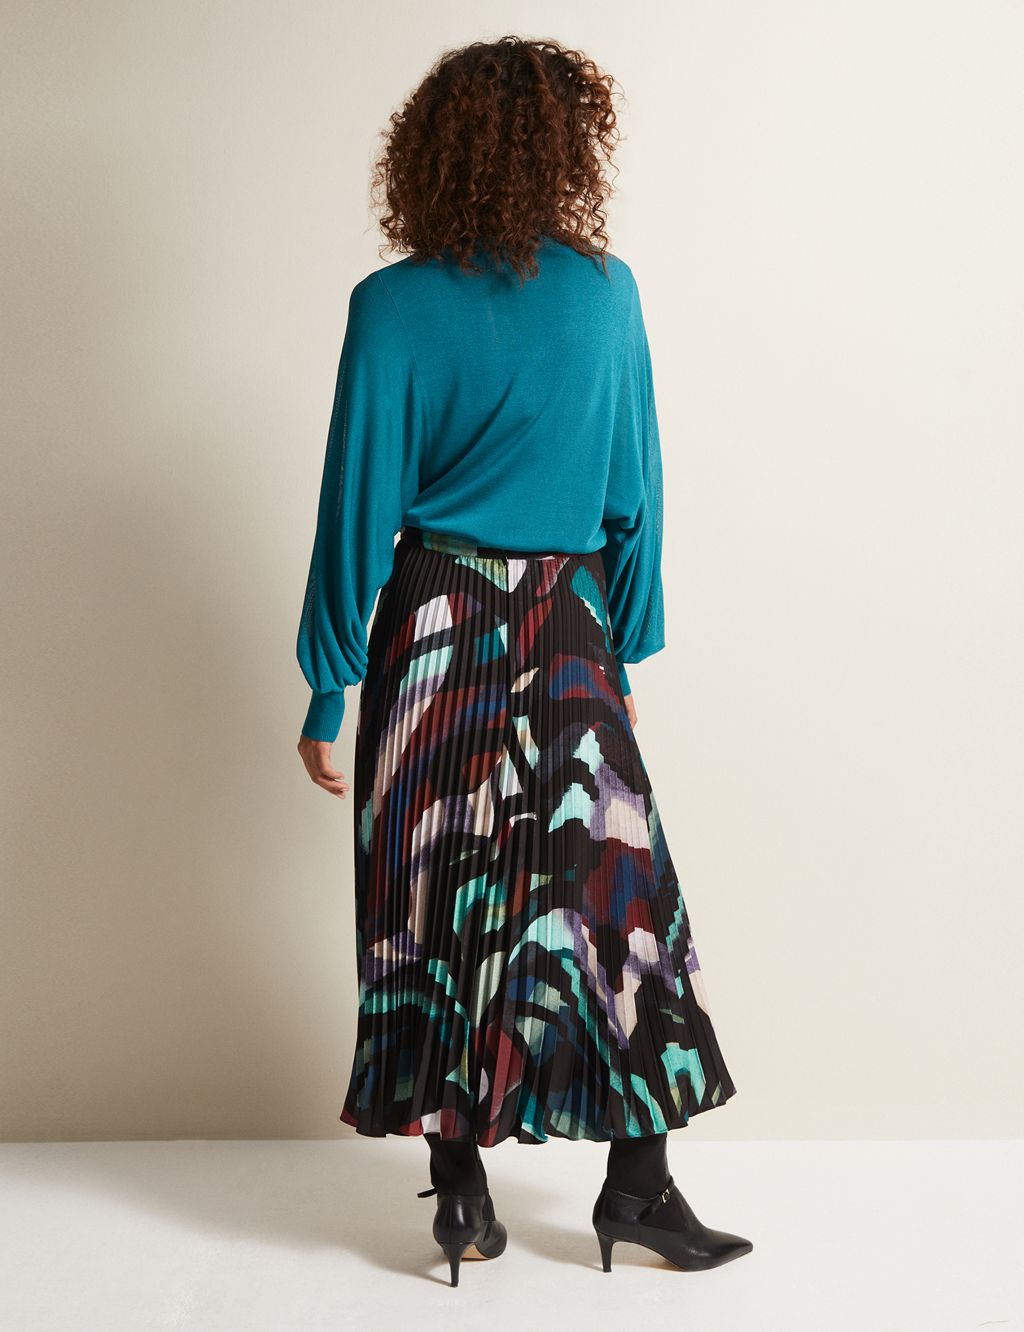 Printed Pleated Midaxi Skirt image 3